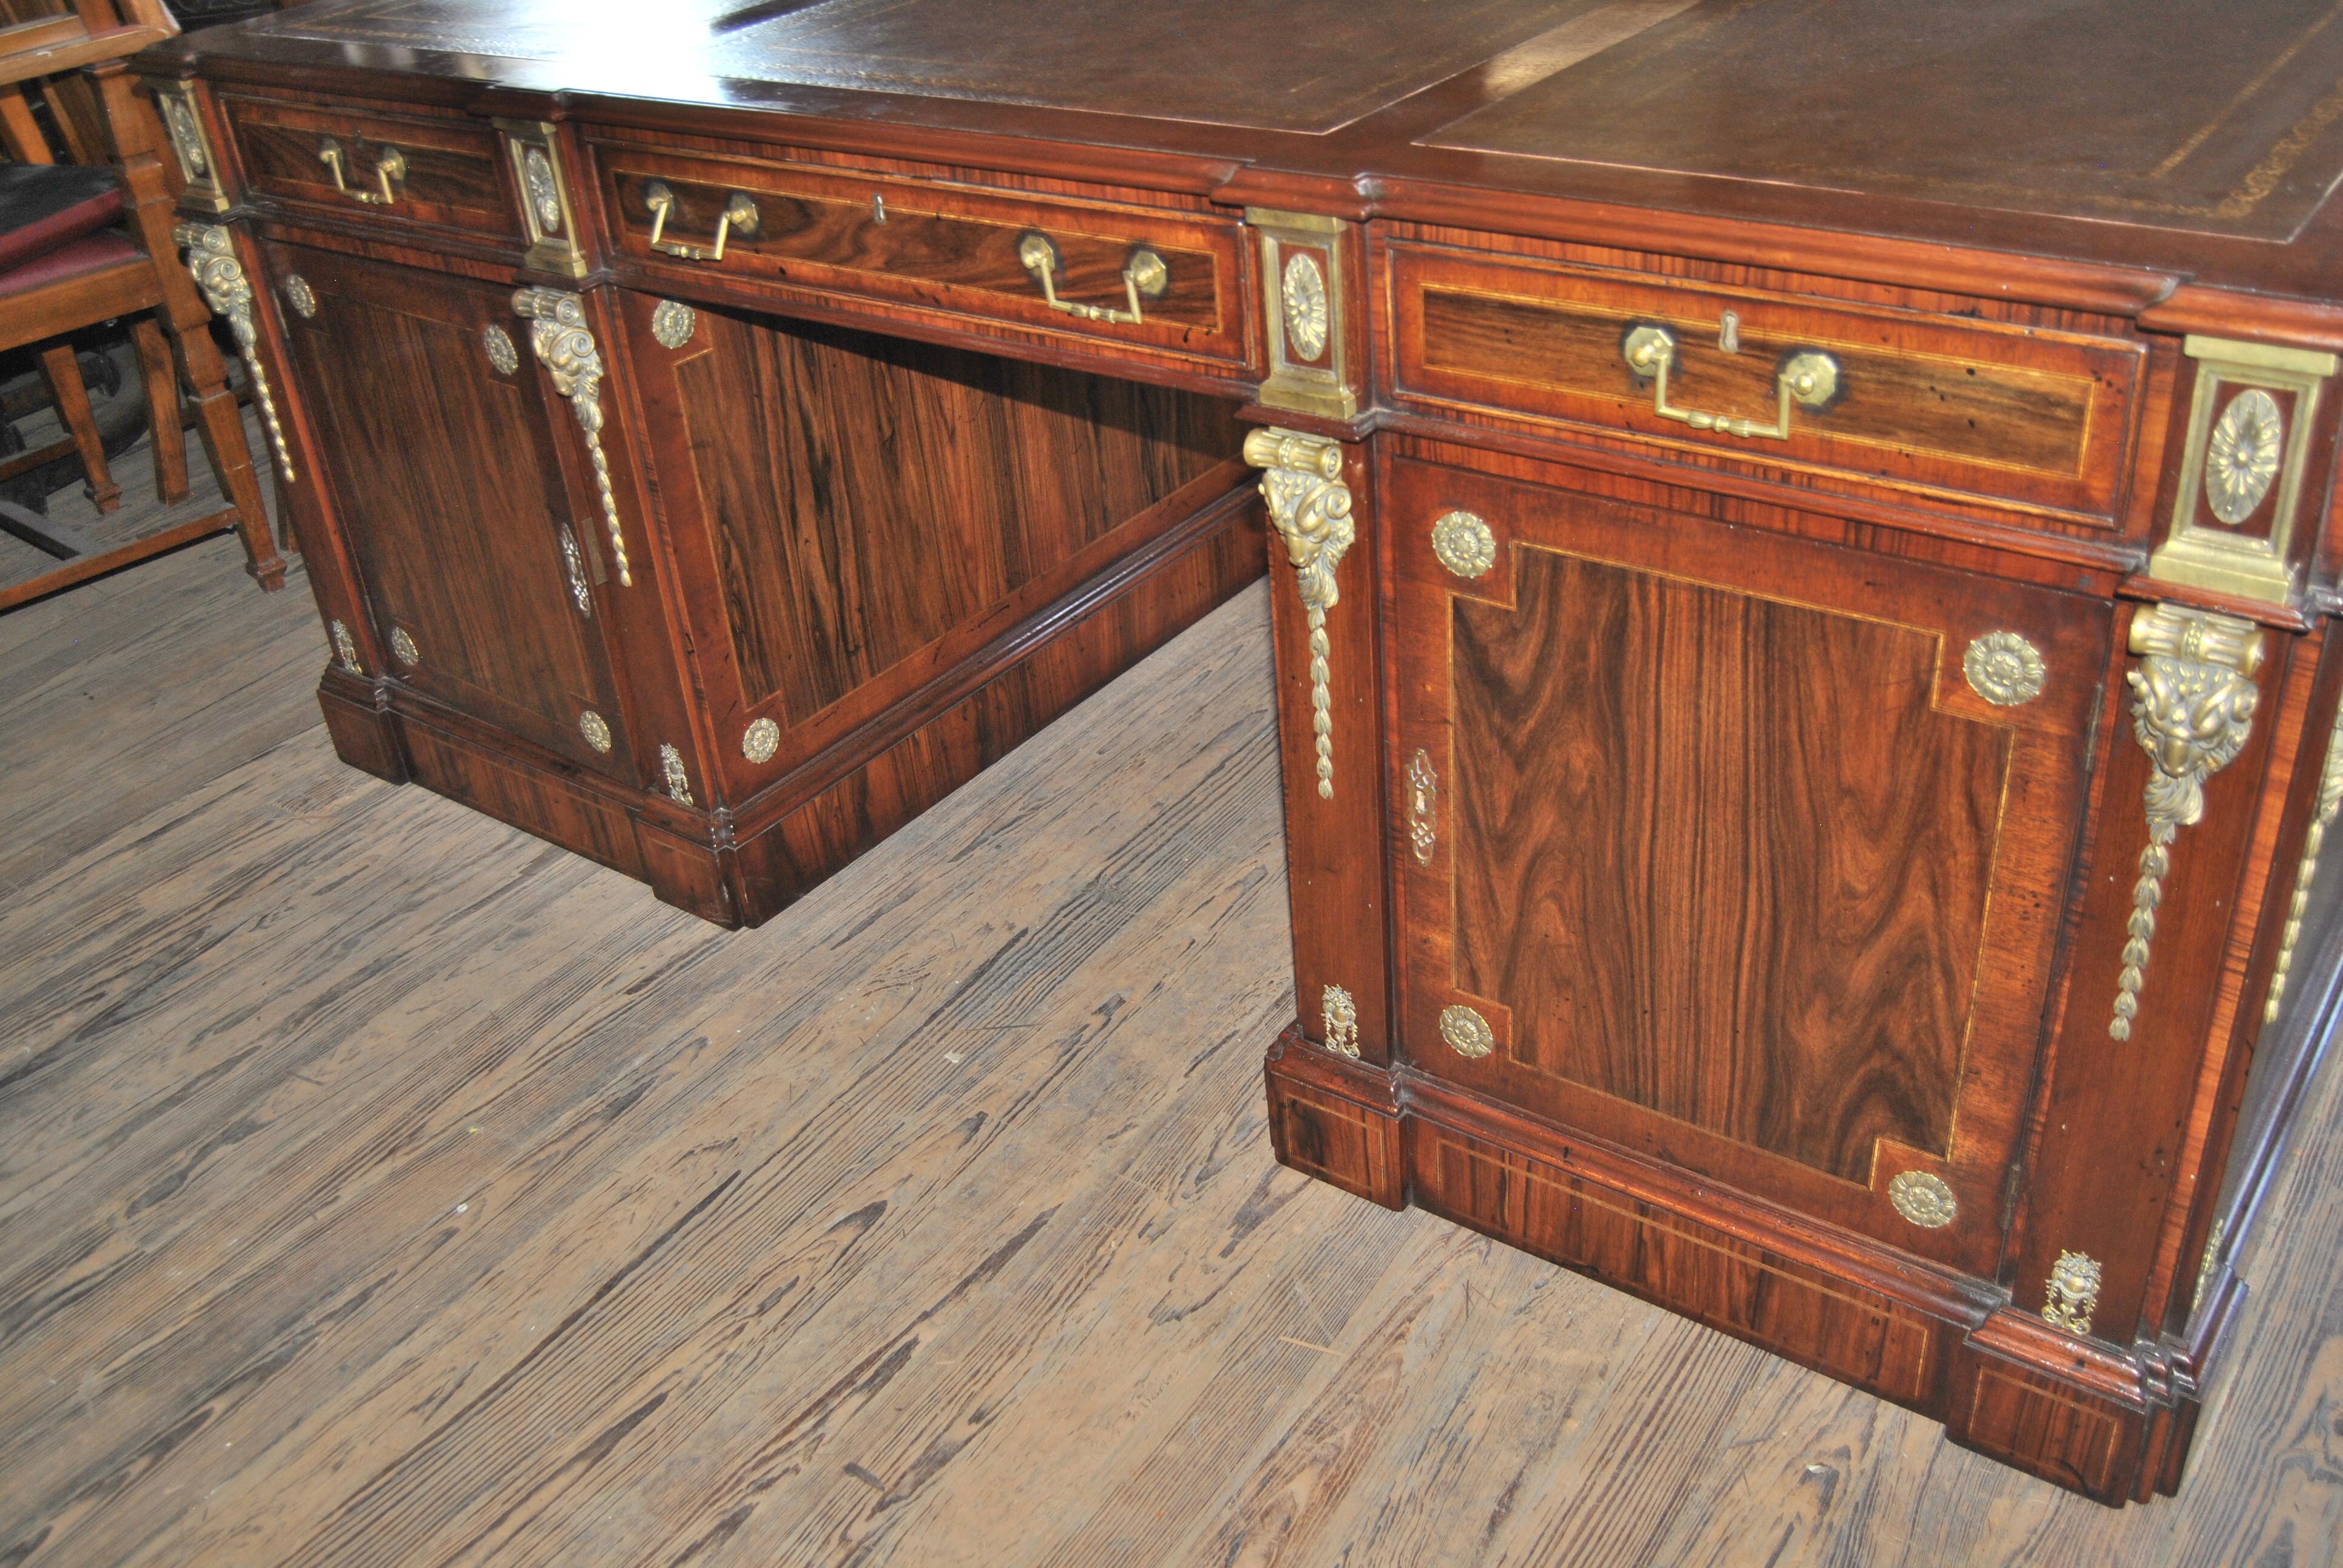 Dies ist ein Partner-Schreibtisch aus England, ca. 1890. Die Tischplatte ist wunderschön geformt und hat einen schön geformten Rand. Es gibt 3 braune Ledertafeln mit Goldprägung. Auf der Vorderseite des Schreibtisches befinden sich rechts und links